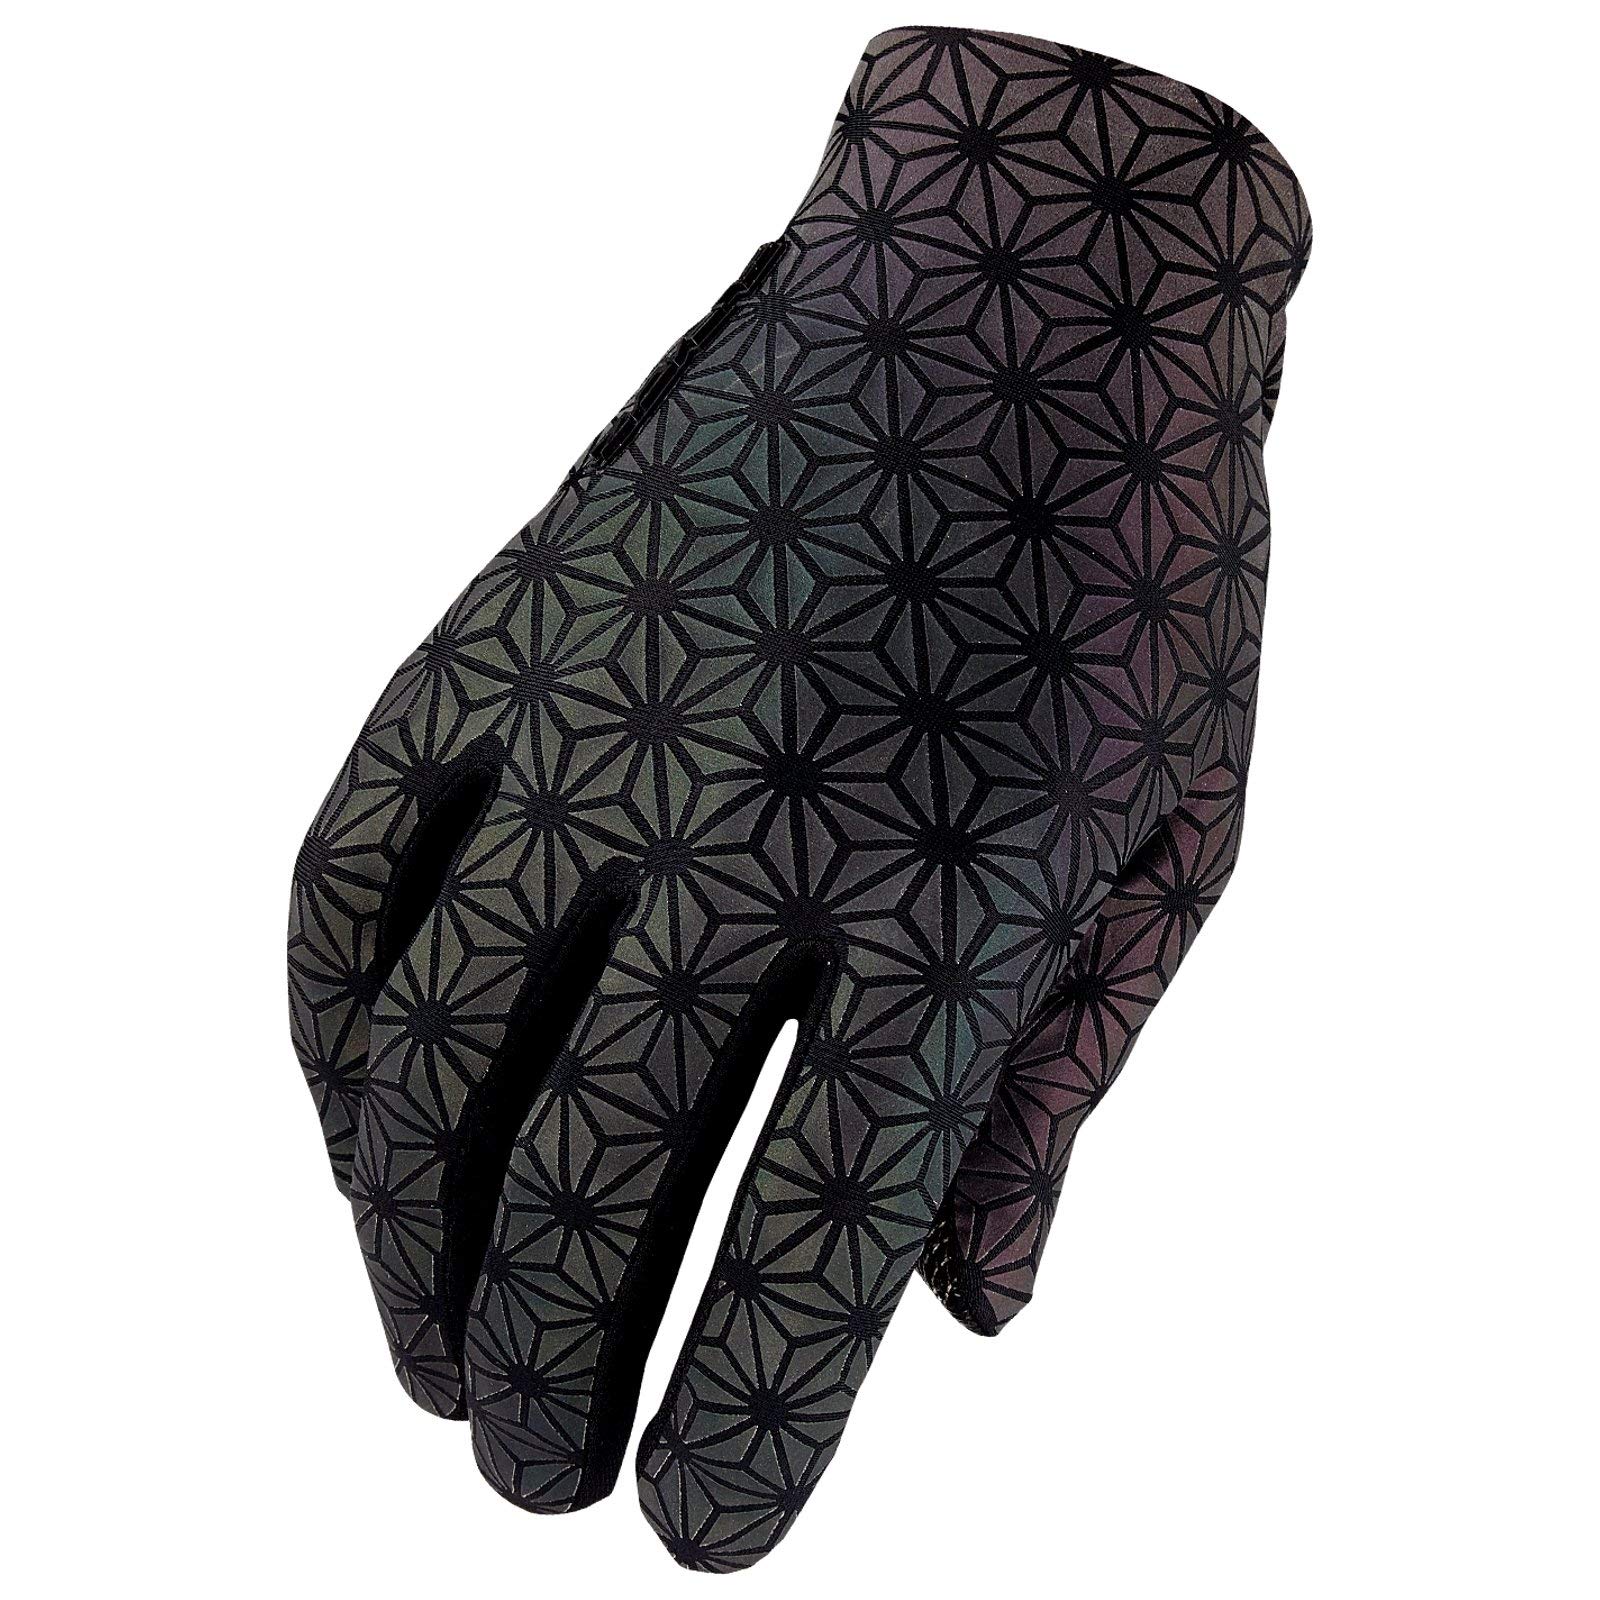 Supacaz Unisex SupaG Long Glove Handschuhe, Oil Slick, M, GL-38M